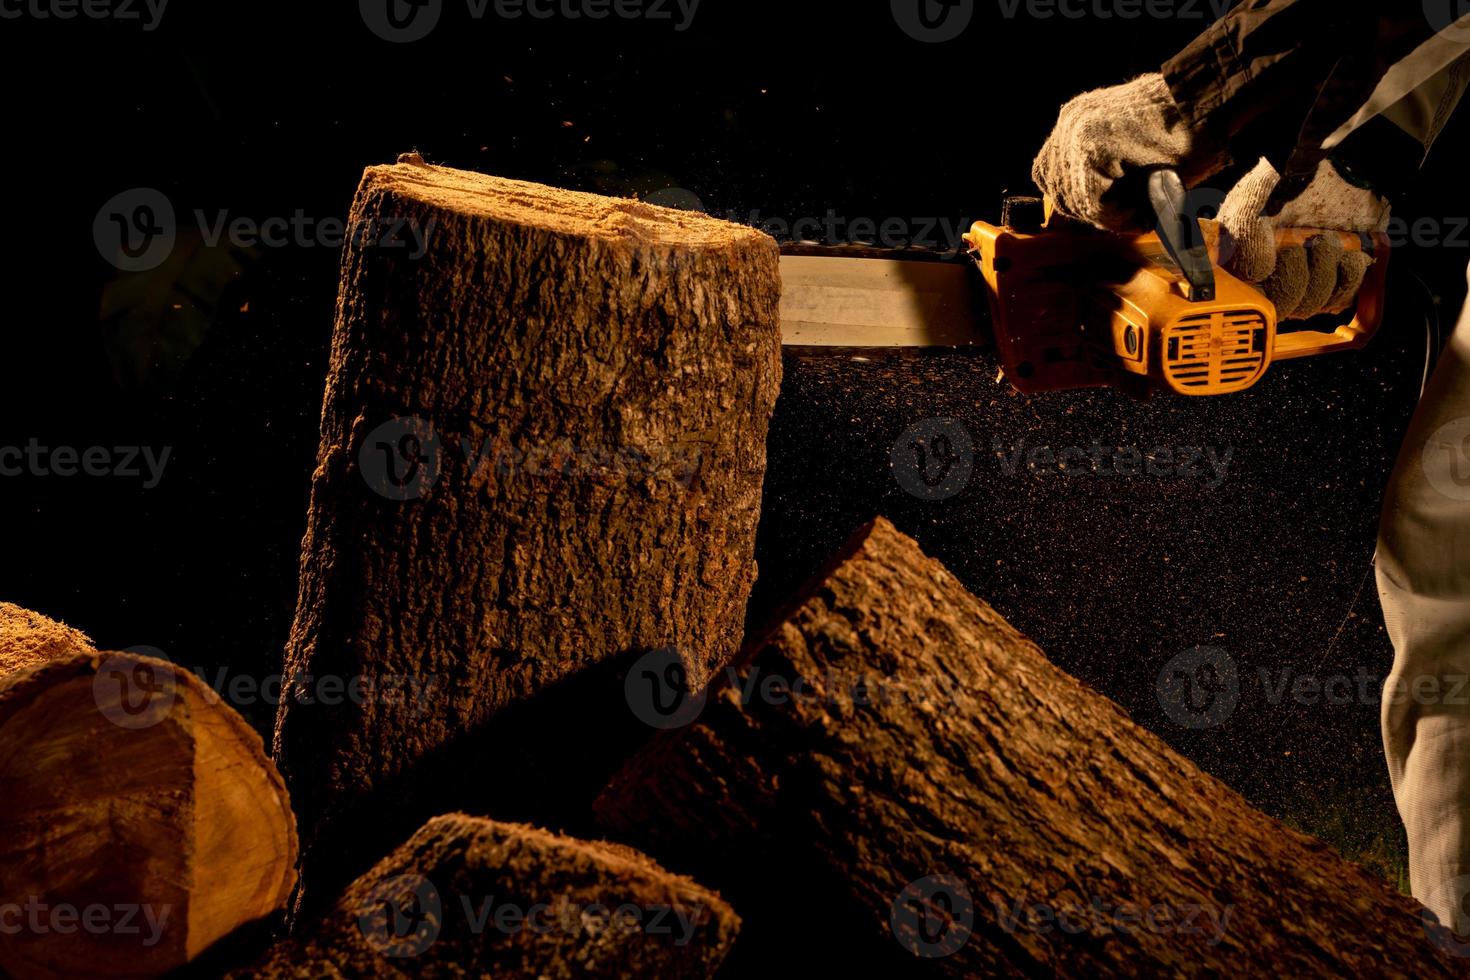 elektrische kettensägen fällen bäume im wald für den bau eines hauses und machen brennholz das konzept der entwaldung foto